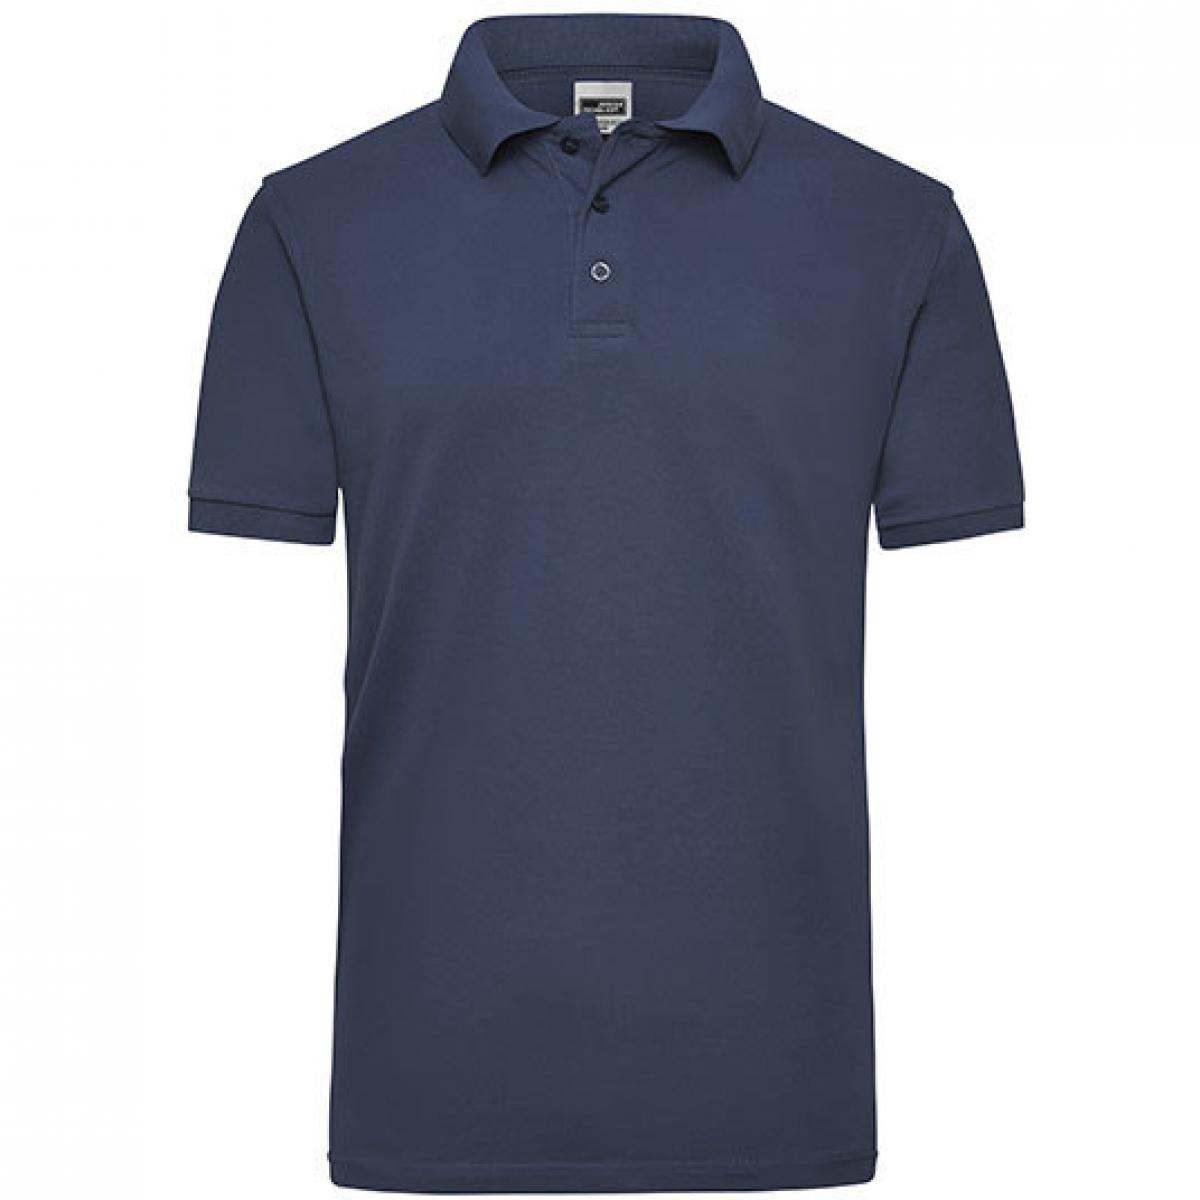 Hersteller: James+Nicholson Herstellernummer: JN 801 Artikelbezeichnung: Workwear Herren Poloshirt Men Farbe: Navy